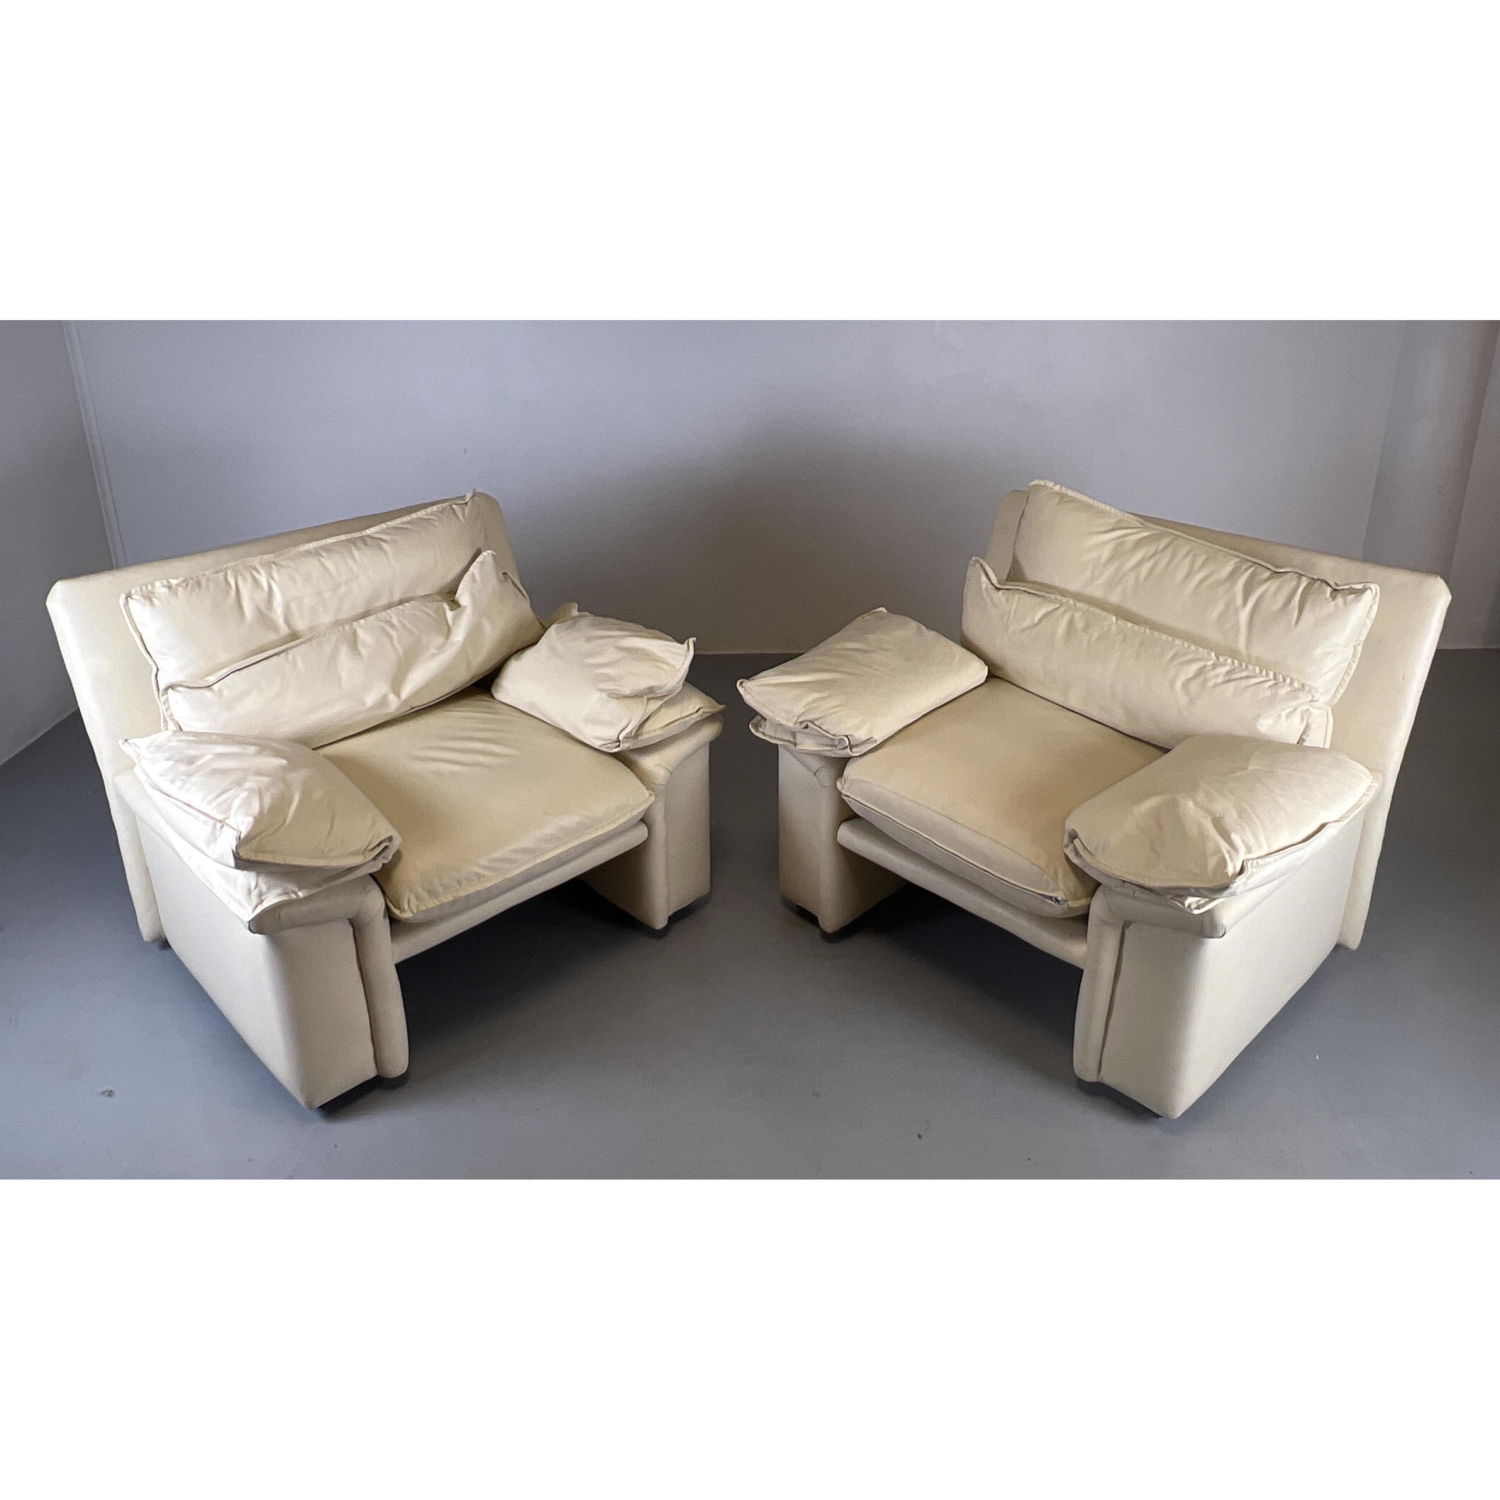 Pr BERNHARDT Modernist Lounge Chairs  2fd02d